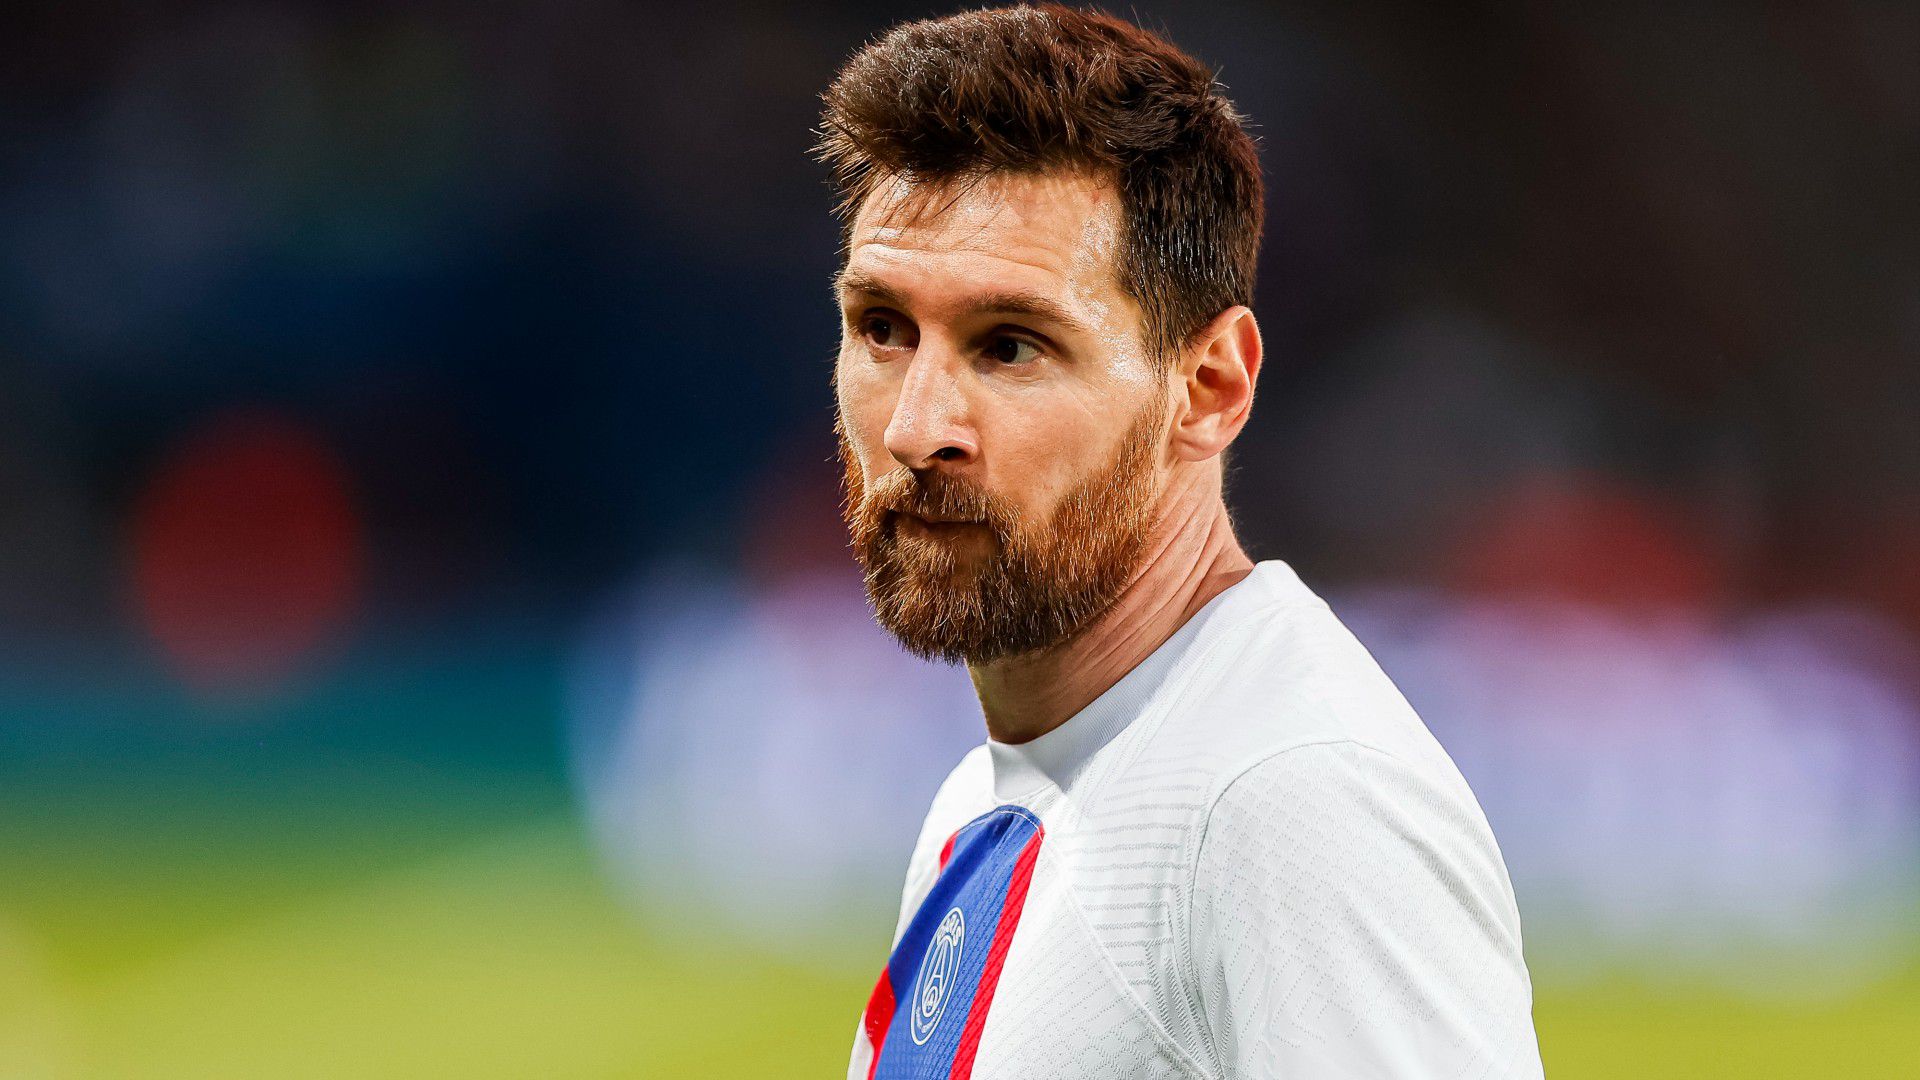 SAJTÓHÍR: Messi hosszabbíthat a PSG-vel, de Laporta még bekavarhat